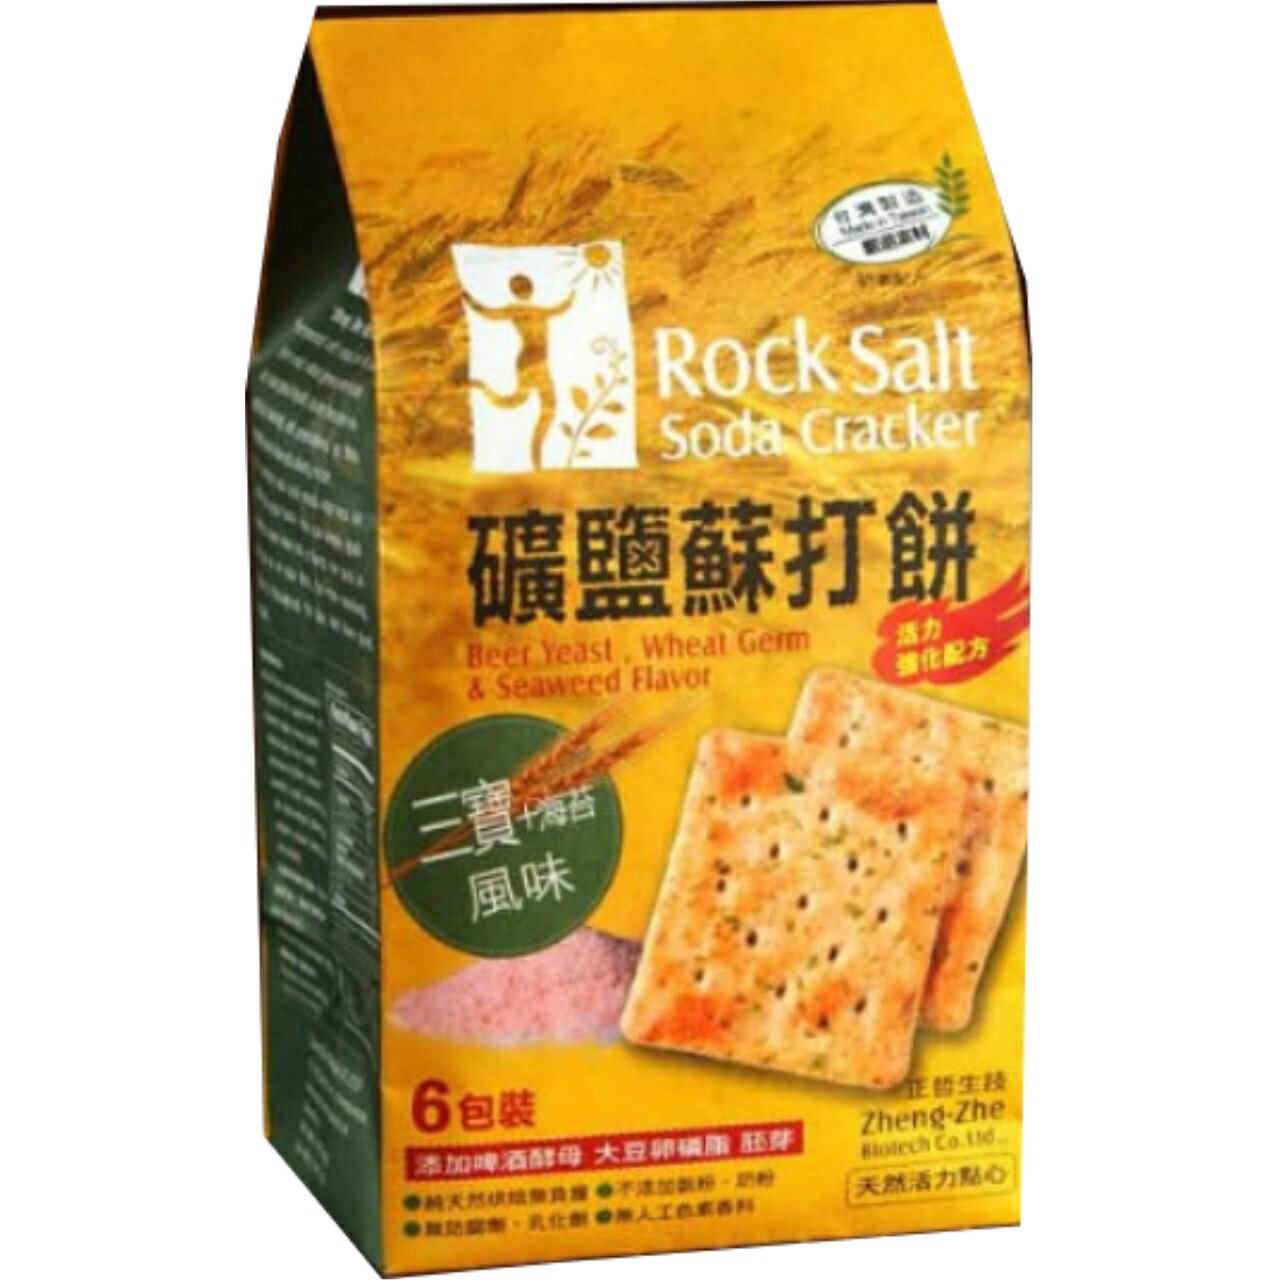 正哲礦鹽蘇打餅 - 三寶海苔風味365g/袋 (每袋6小包入